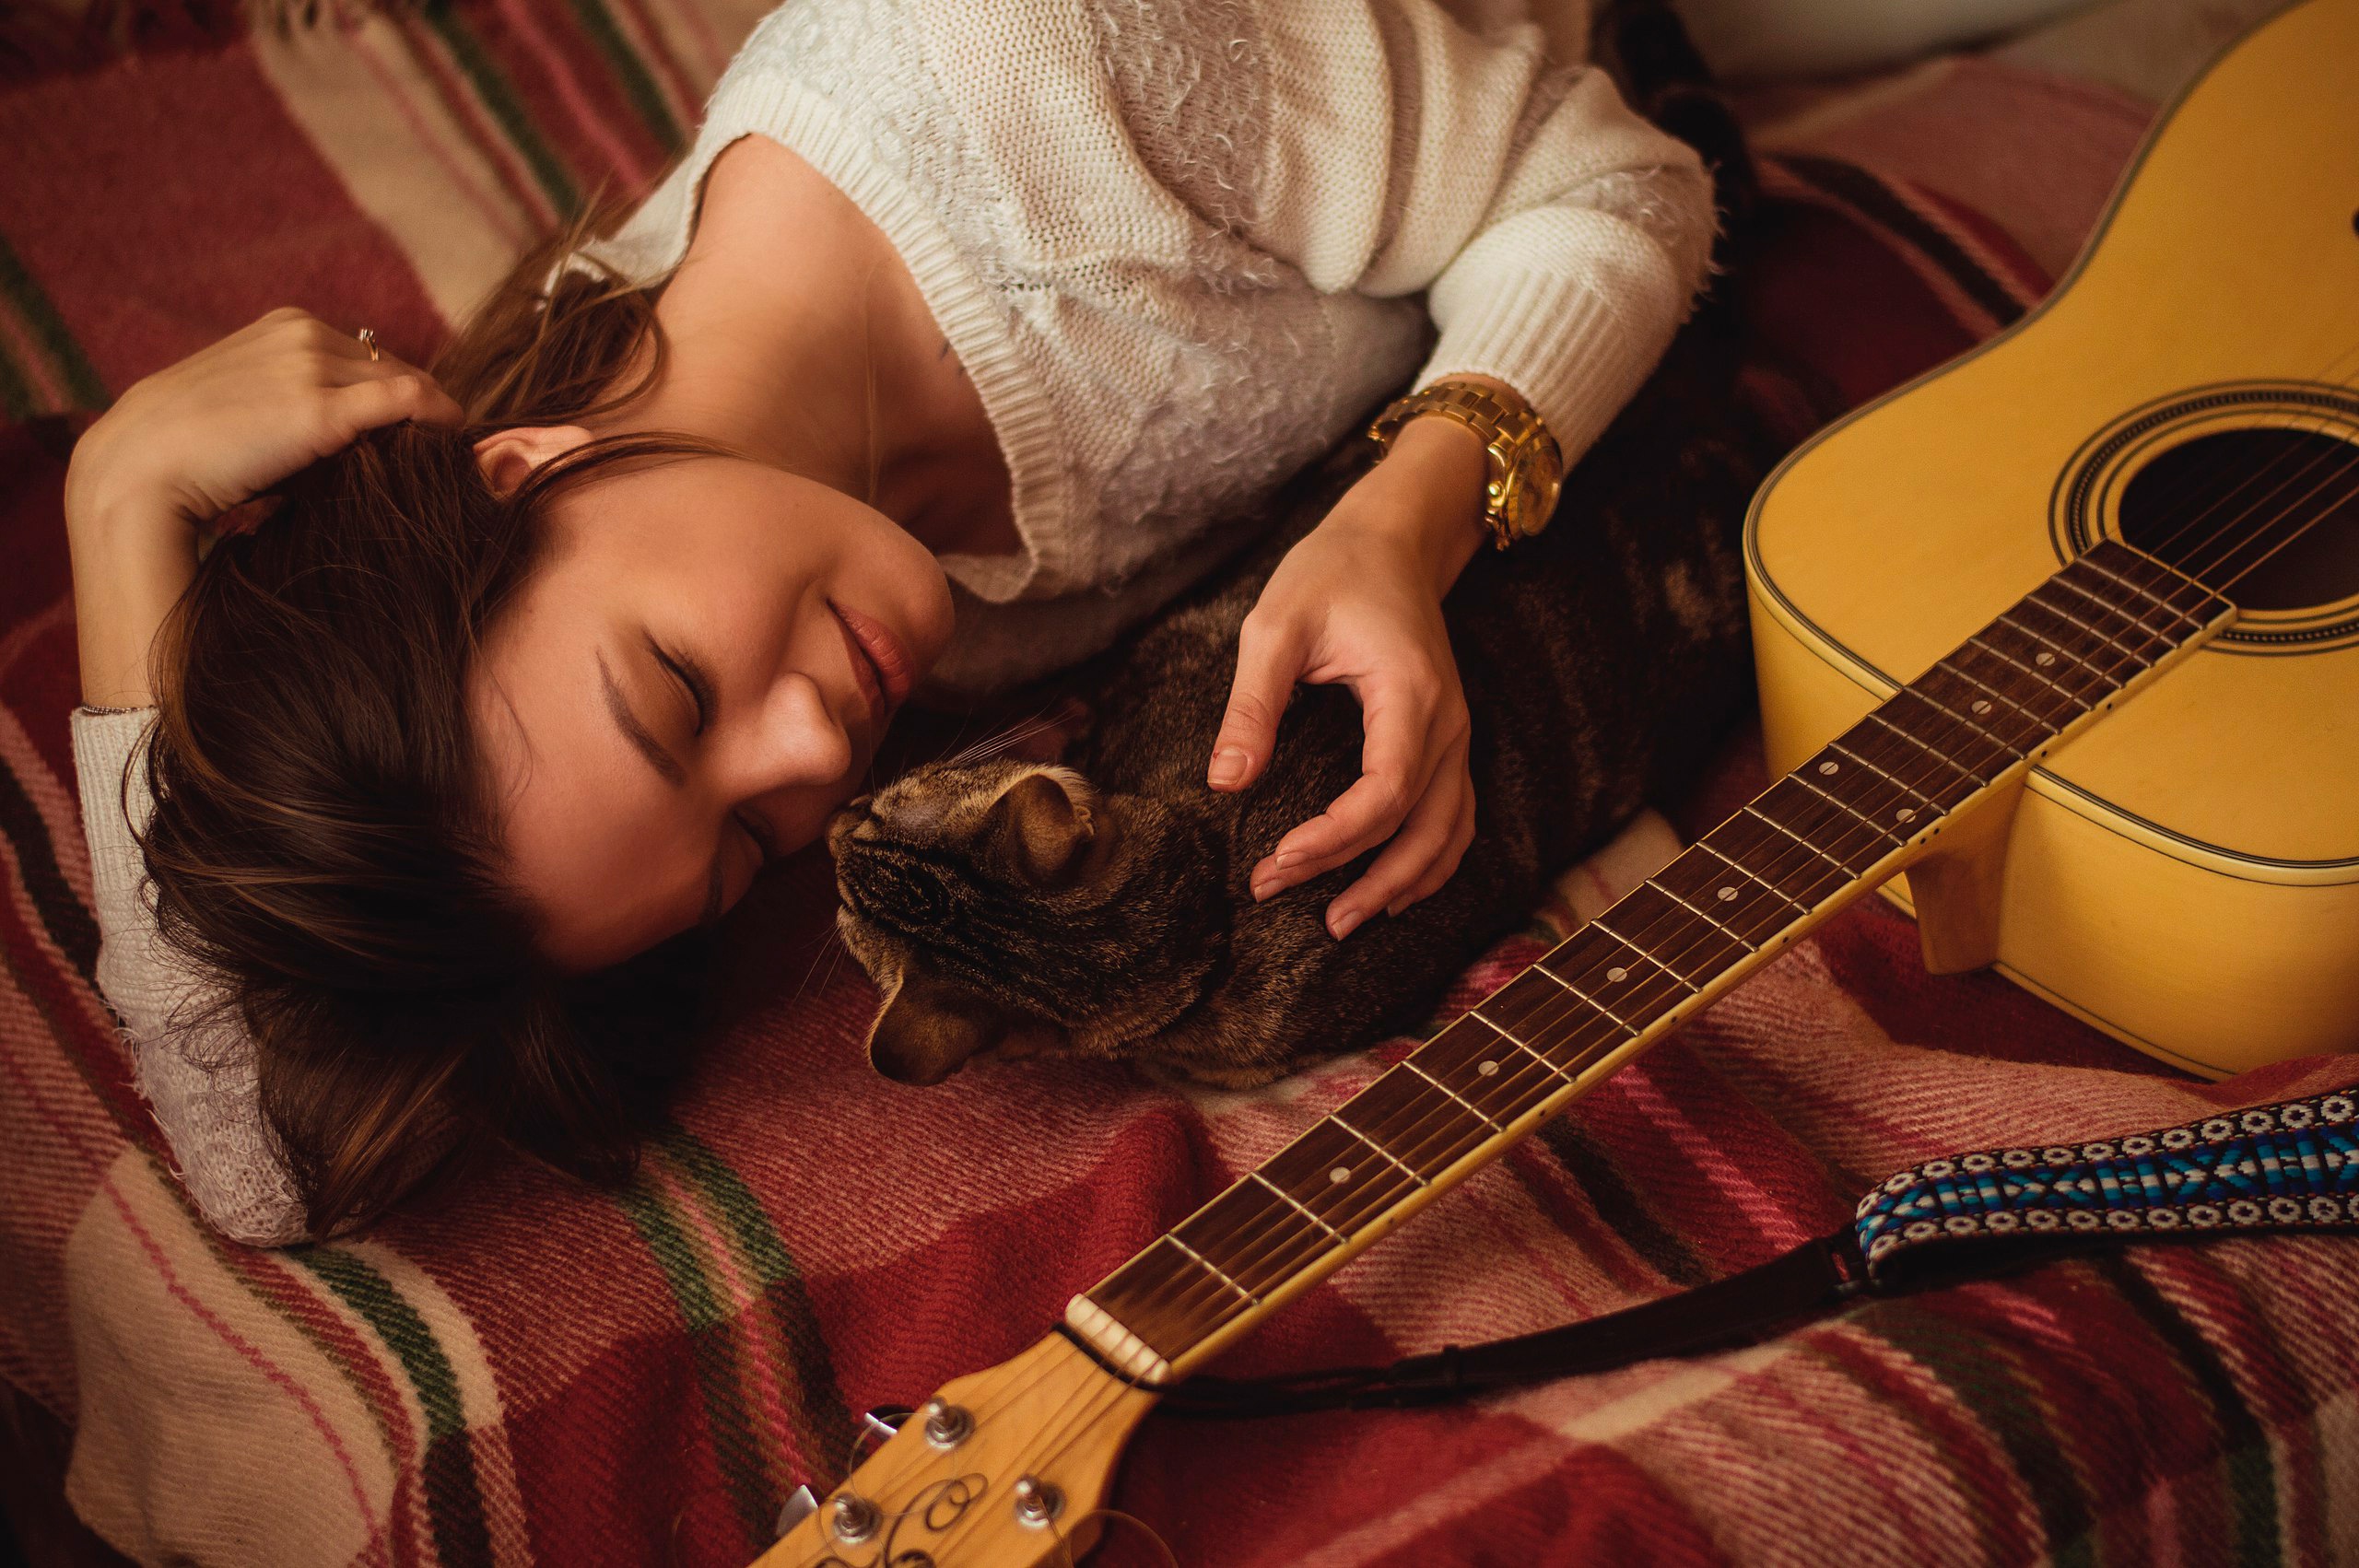 Слушать музыку гитары для души. Девушка с гитарой. Девушка с электрогитарой. Девушка лежит с гитарой. Домашняя фотосессия с гитарой.